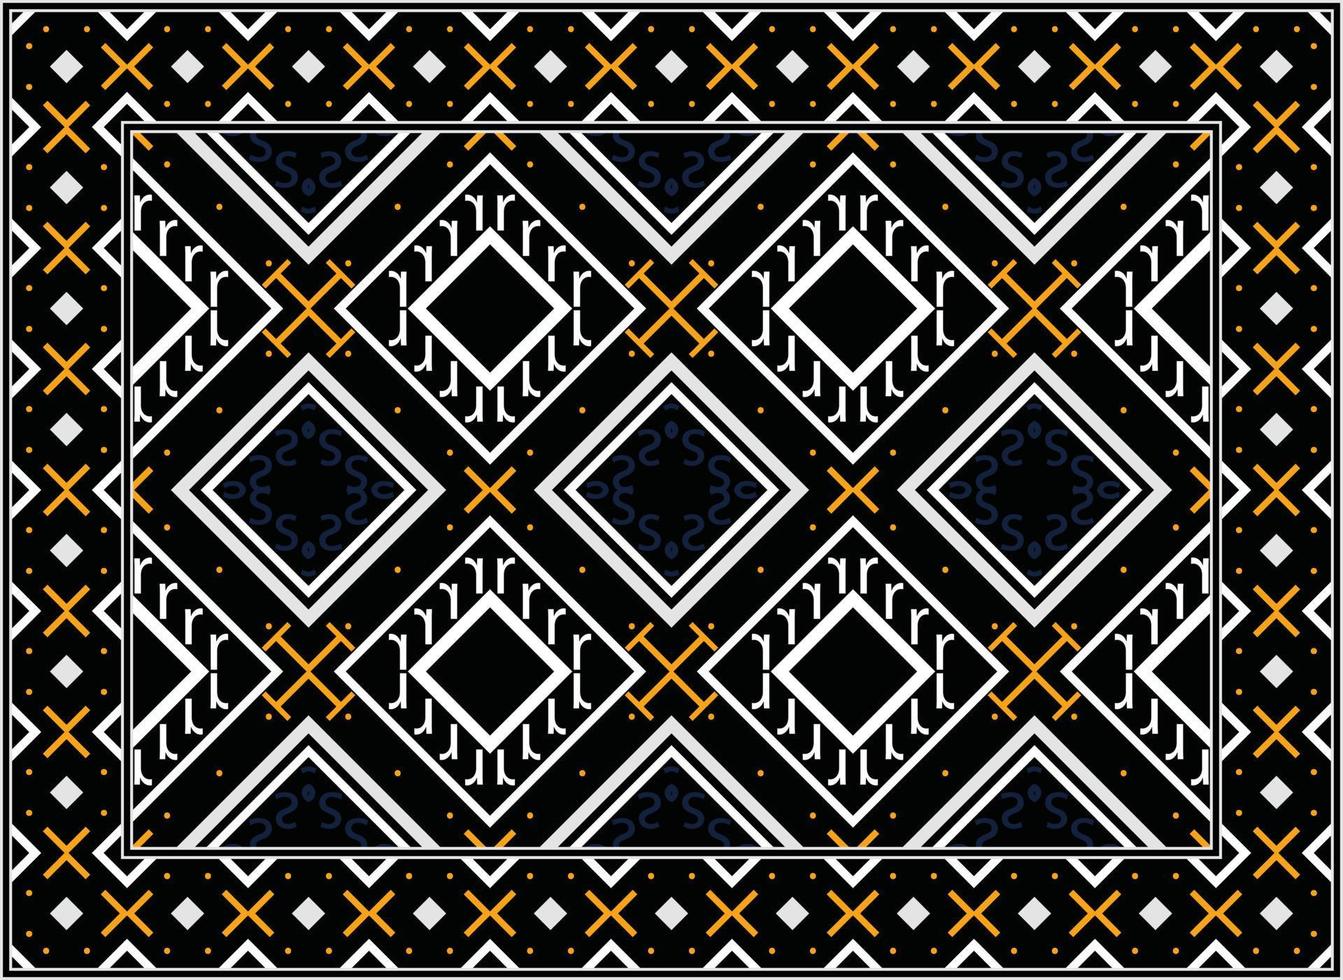 antico persiano tappeto, motivo etnico senza soluzione di continuità modello moderno persiano tappeto, africano etnico azteco stile design per Stampa tessuto tappeti, asciugamani, fazzoletti, sciarpe tappeto, vettore